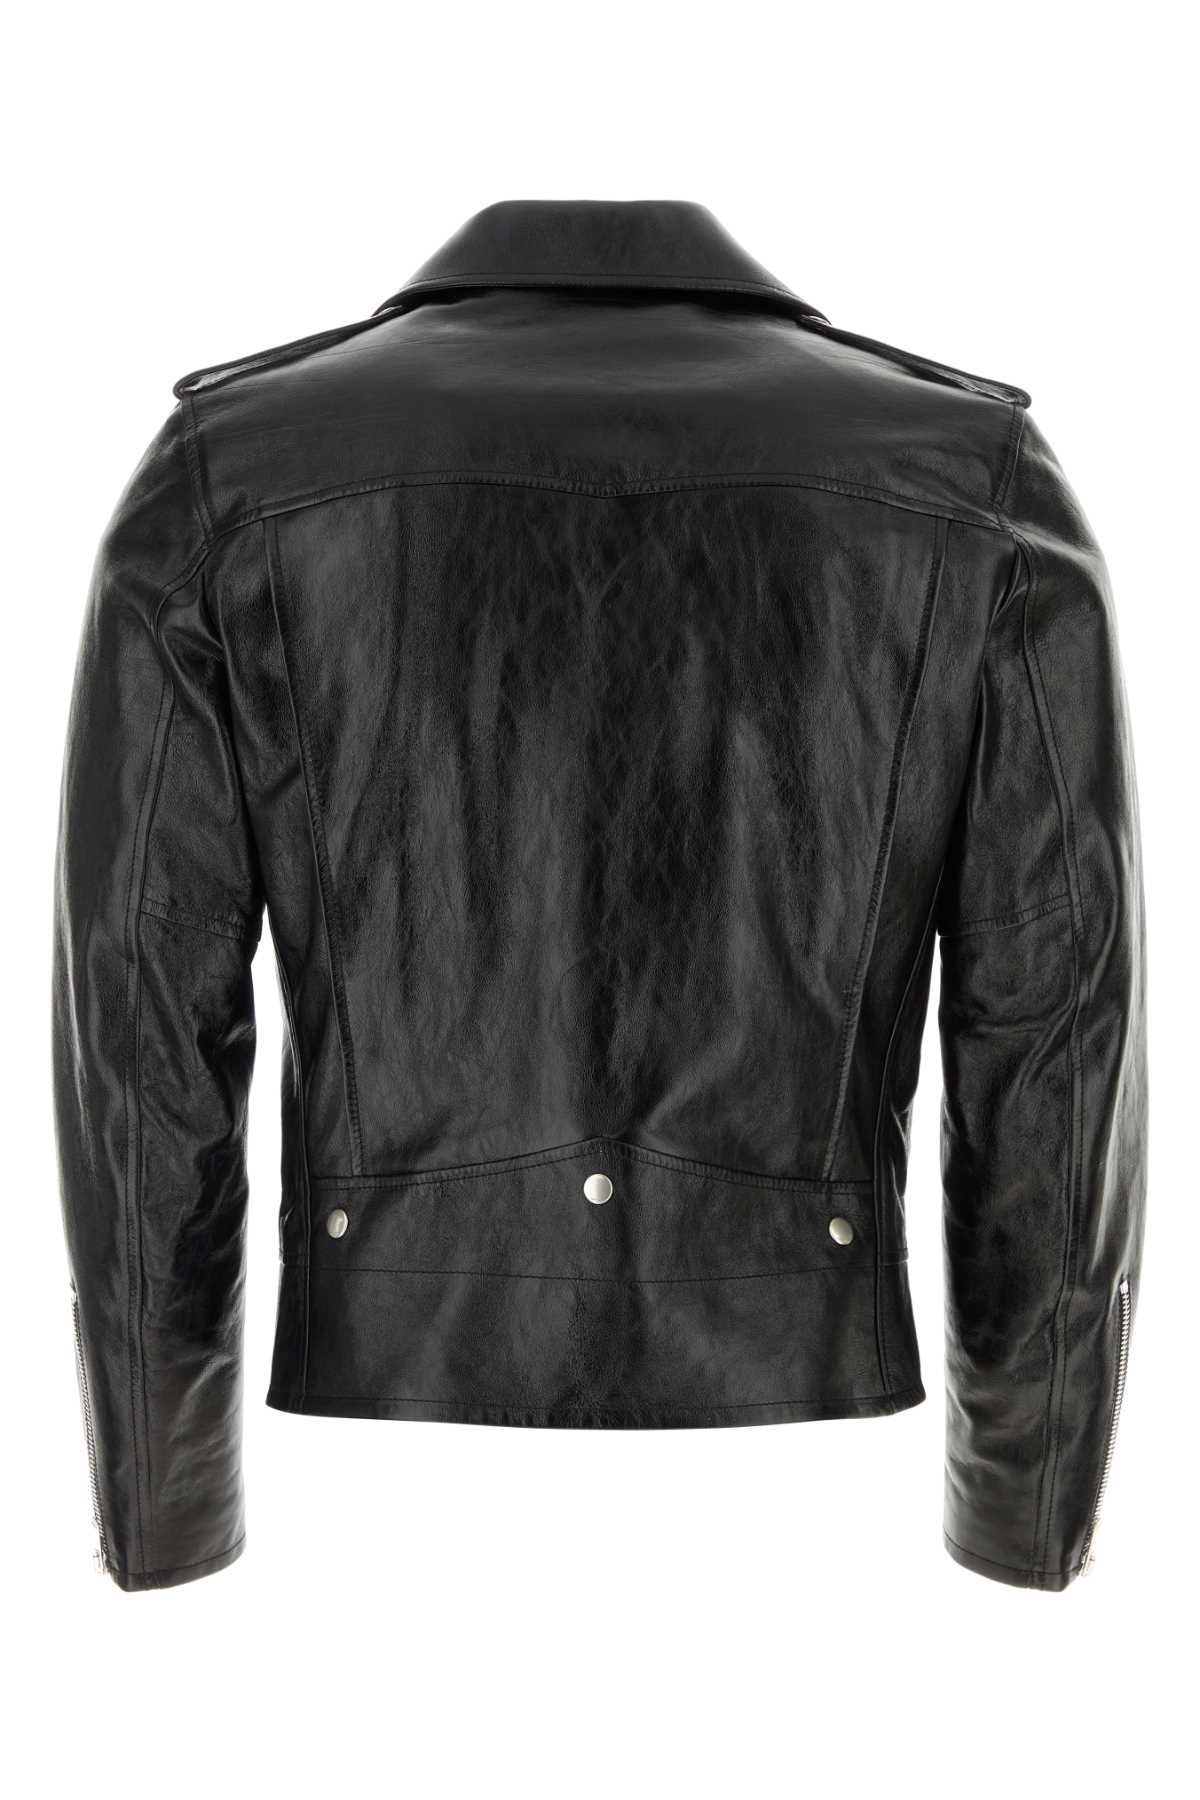 Shop Saint Laurent Black Leather Jacket